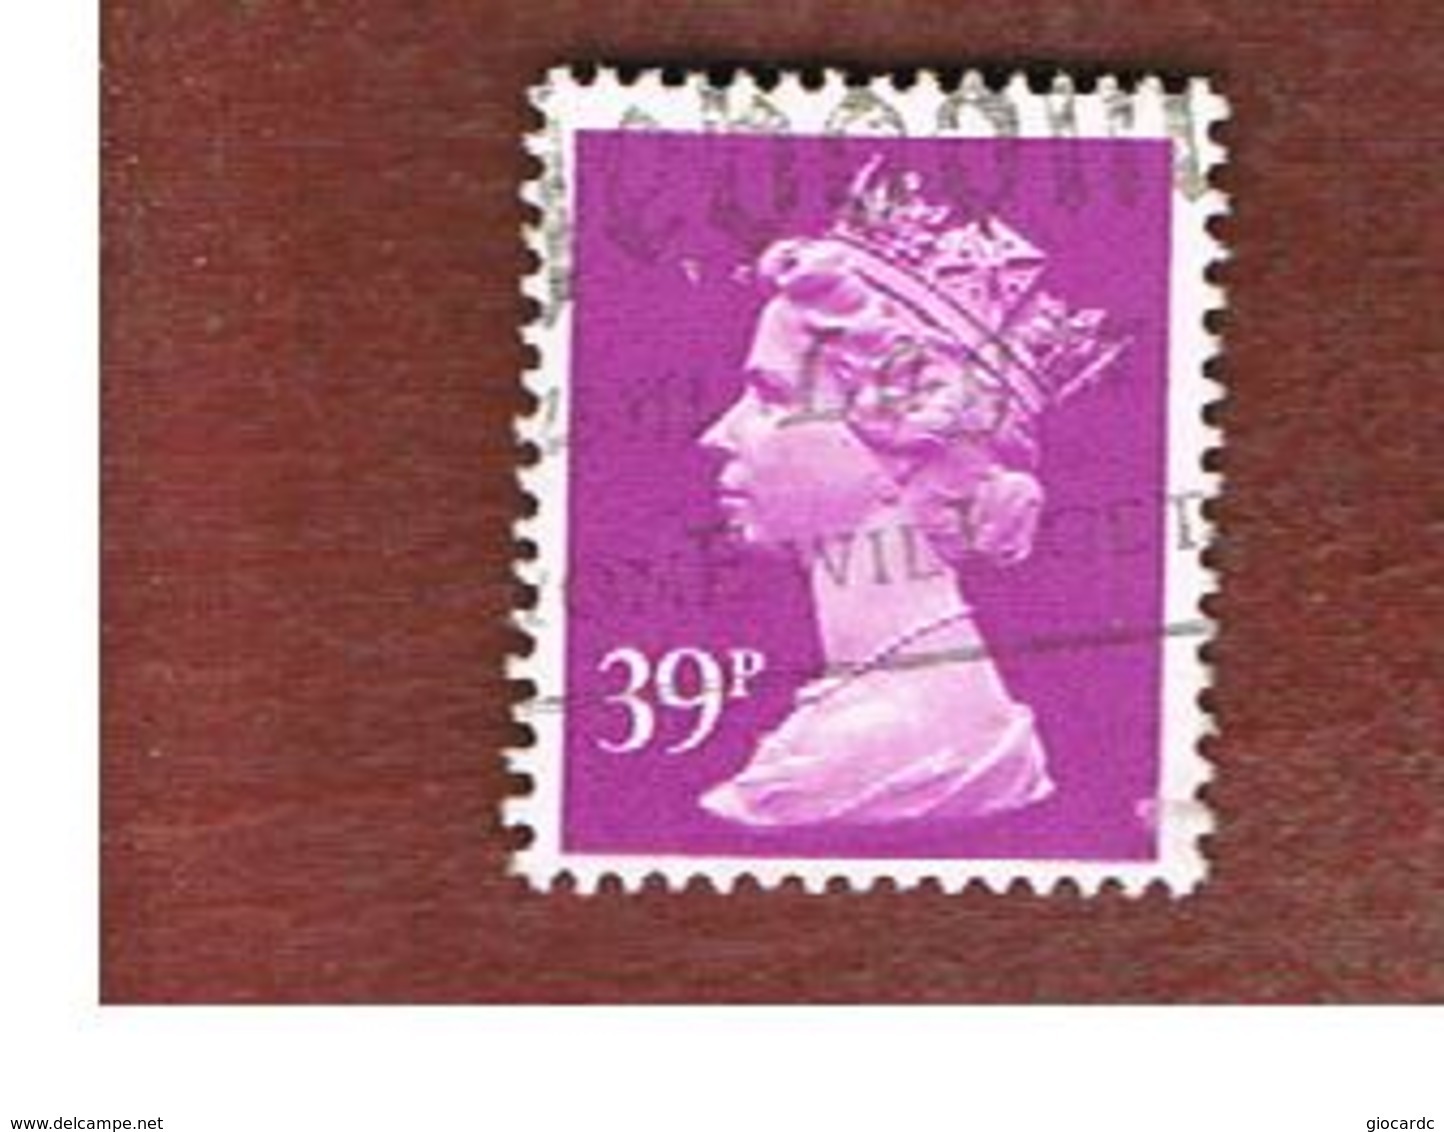 GRAN BRETAGNA (UNITED KINGDOM) -  SG X991 -  1991 QUEEN ELIZABETH II  39         - USED° - Usati